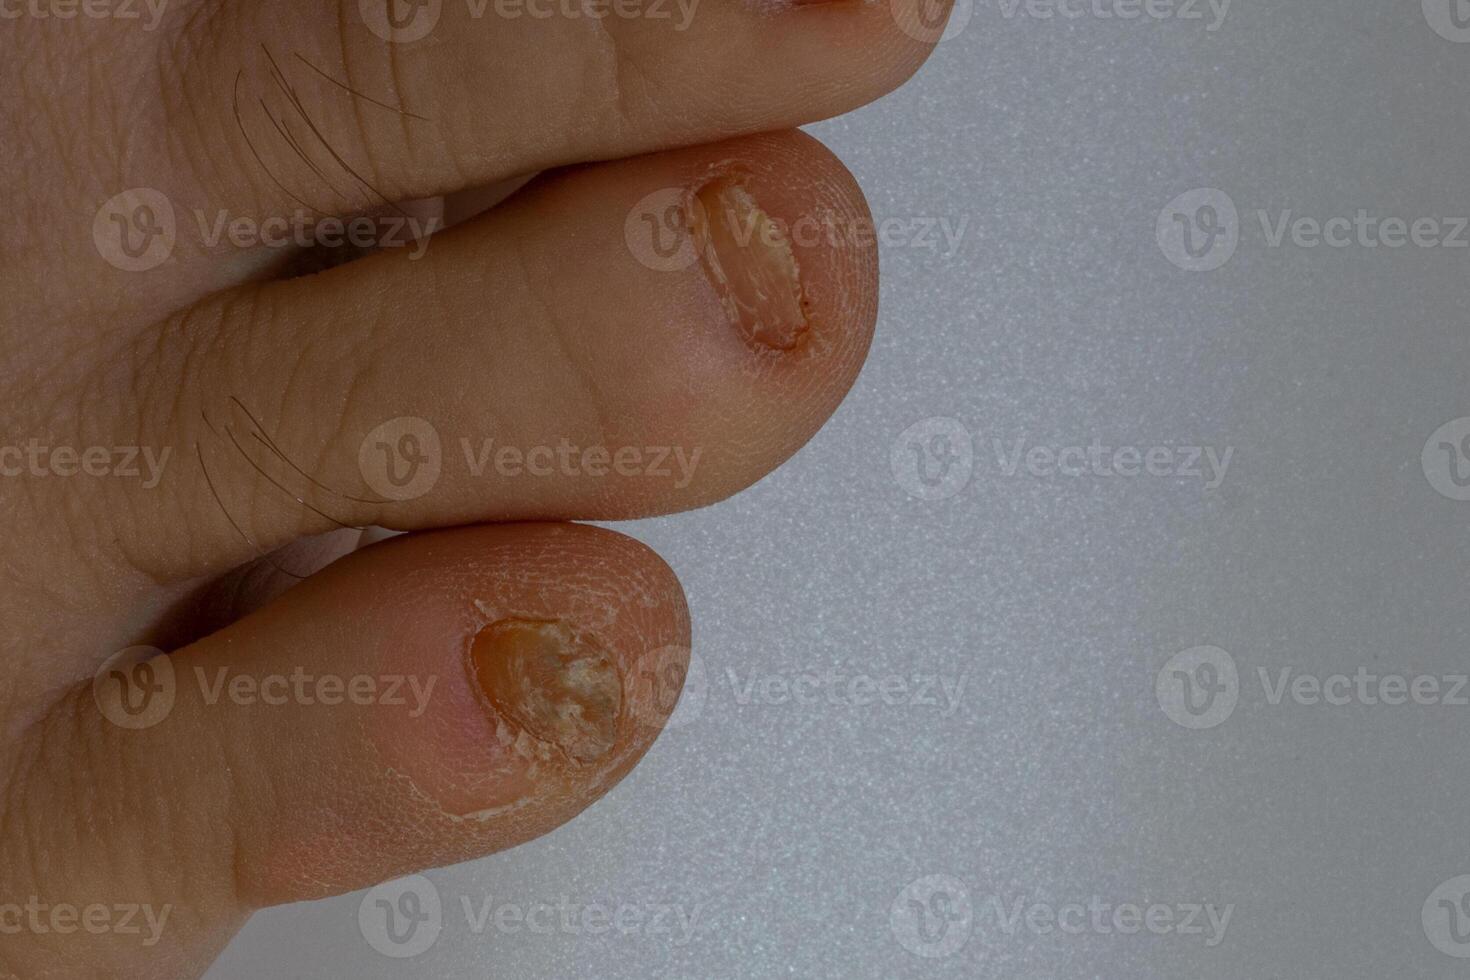 svamp nagel infektion onykomykos torr grov hud av de ben foto